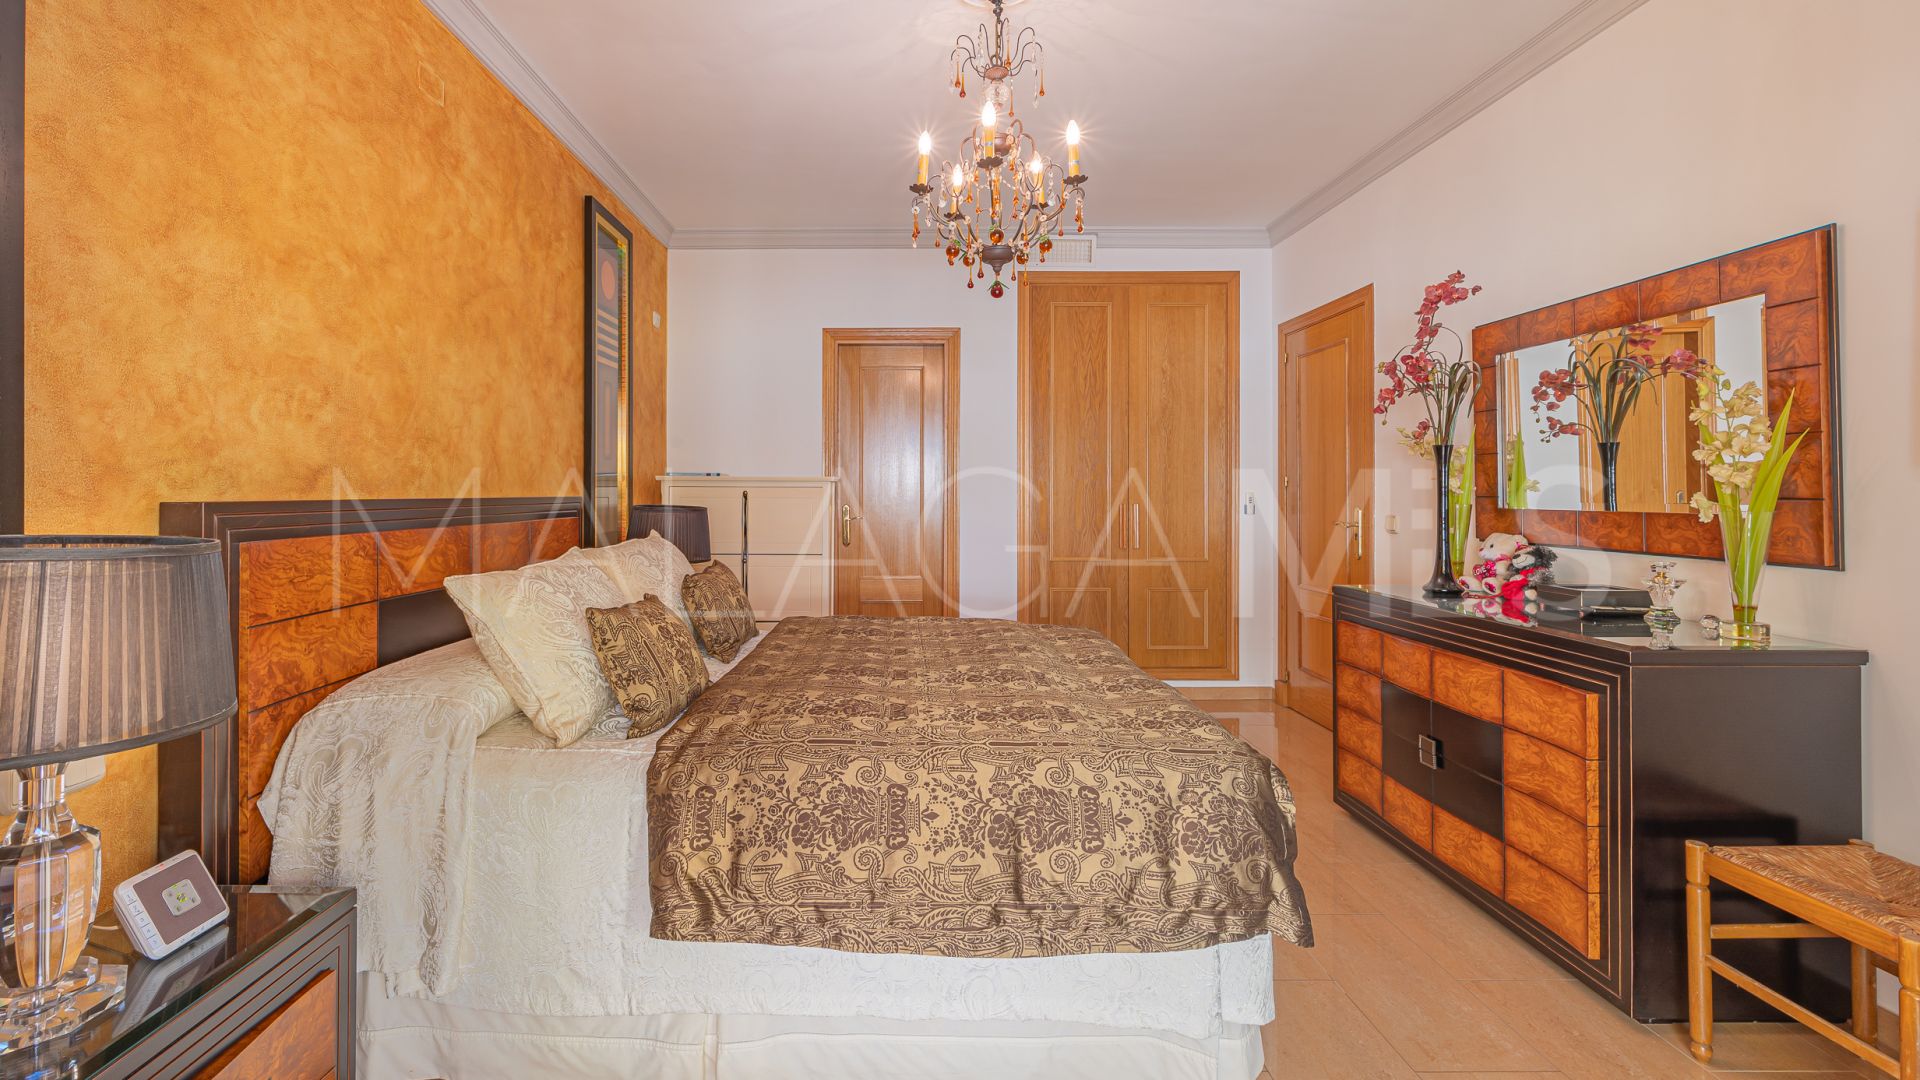 Lägenhet for sale in Guadalcantara